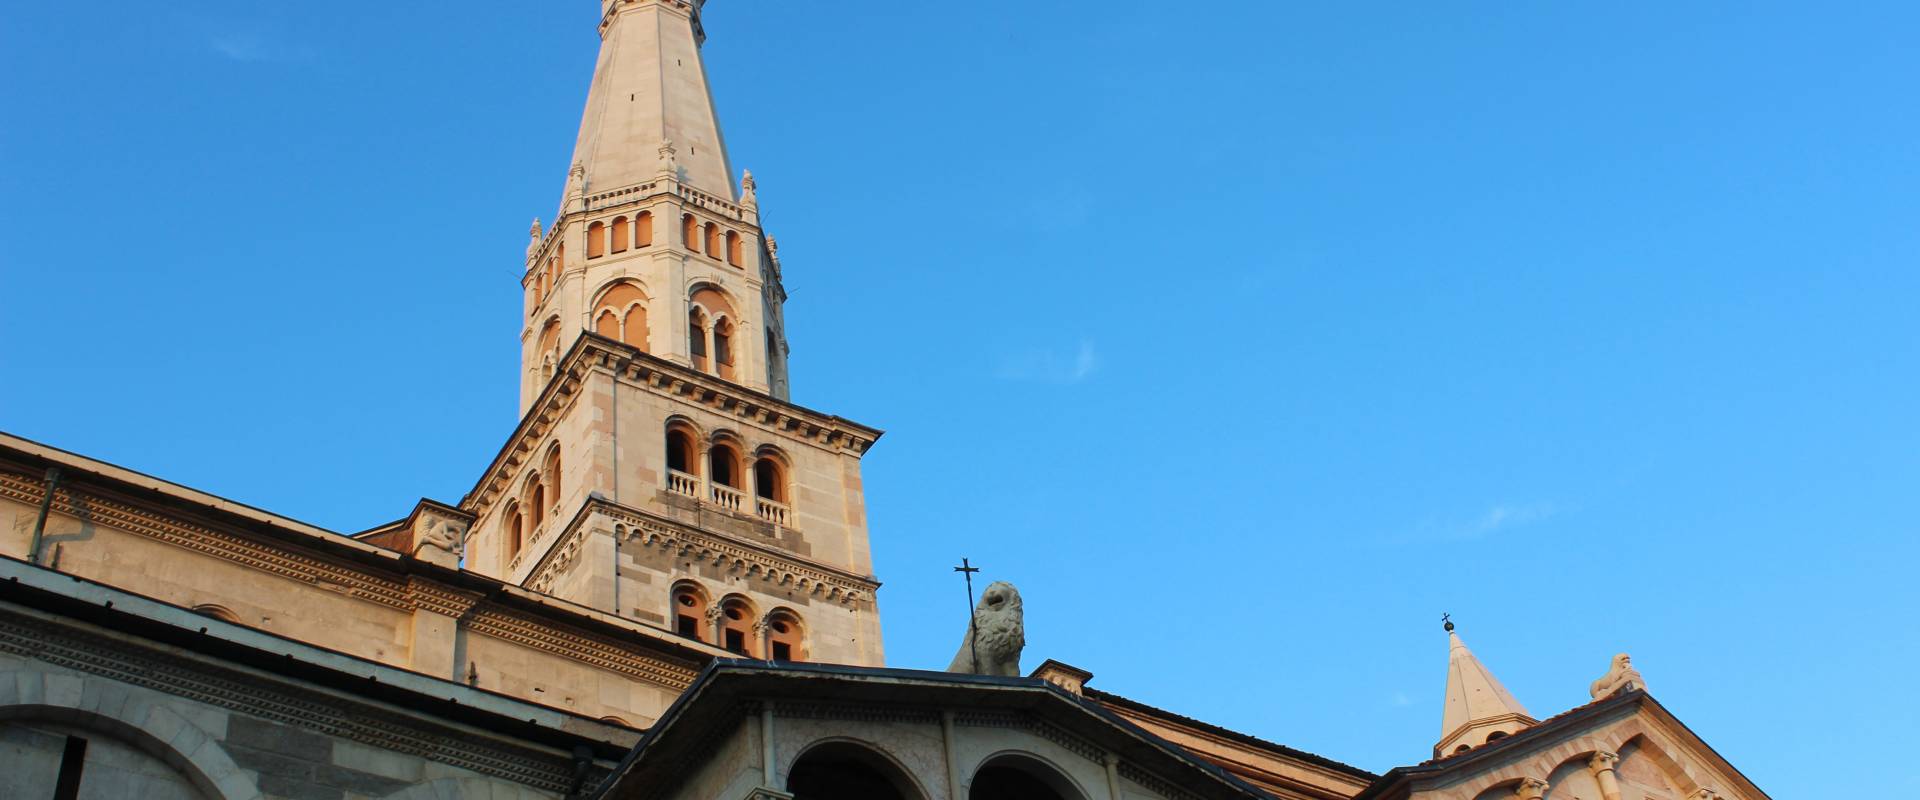 Torre Ghirlandina vista da Piazza Grande Modena foto di BeaDominianni